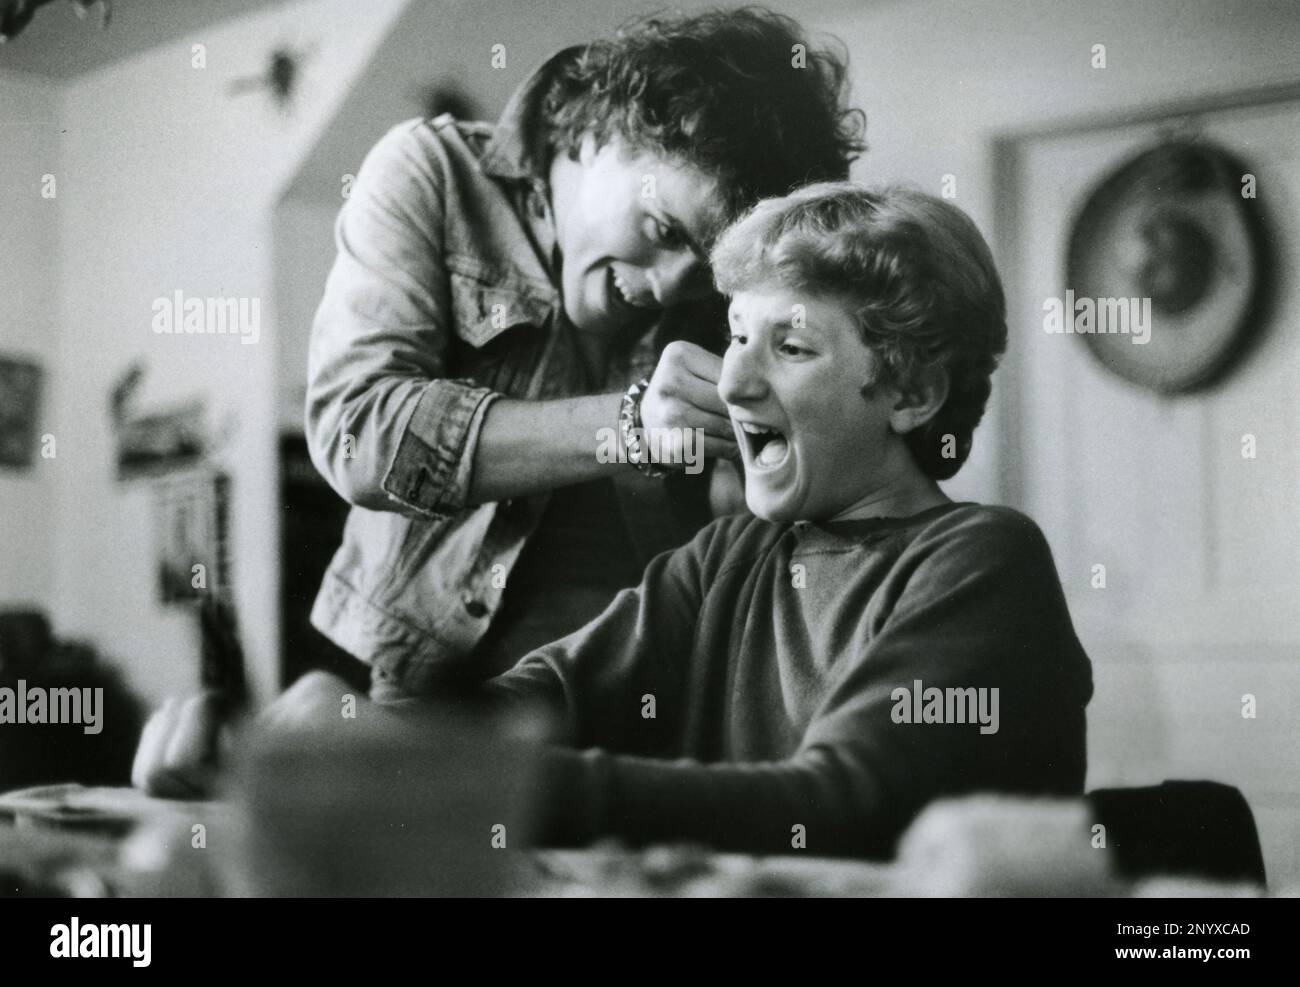 Acteurs Kevin J. O'Connor et Eric Saiet dans le film un samedi soir de plus, USA 1985 Banque D'Images